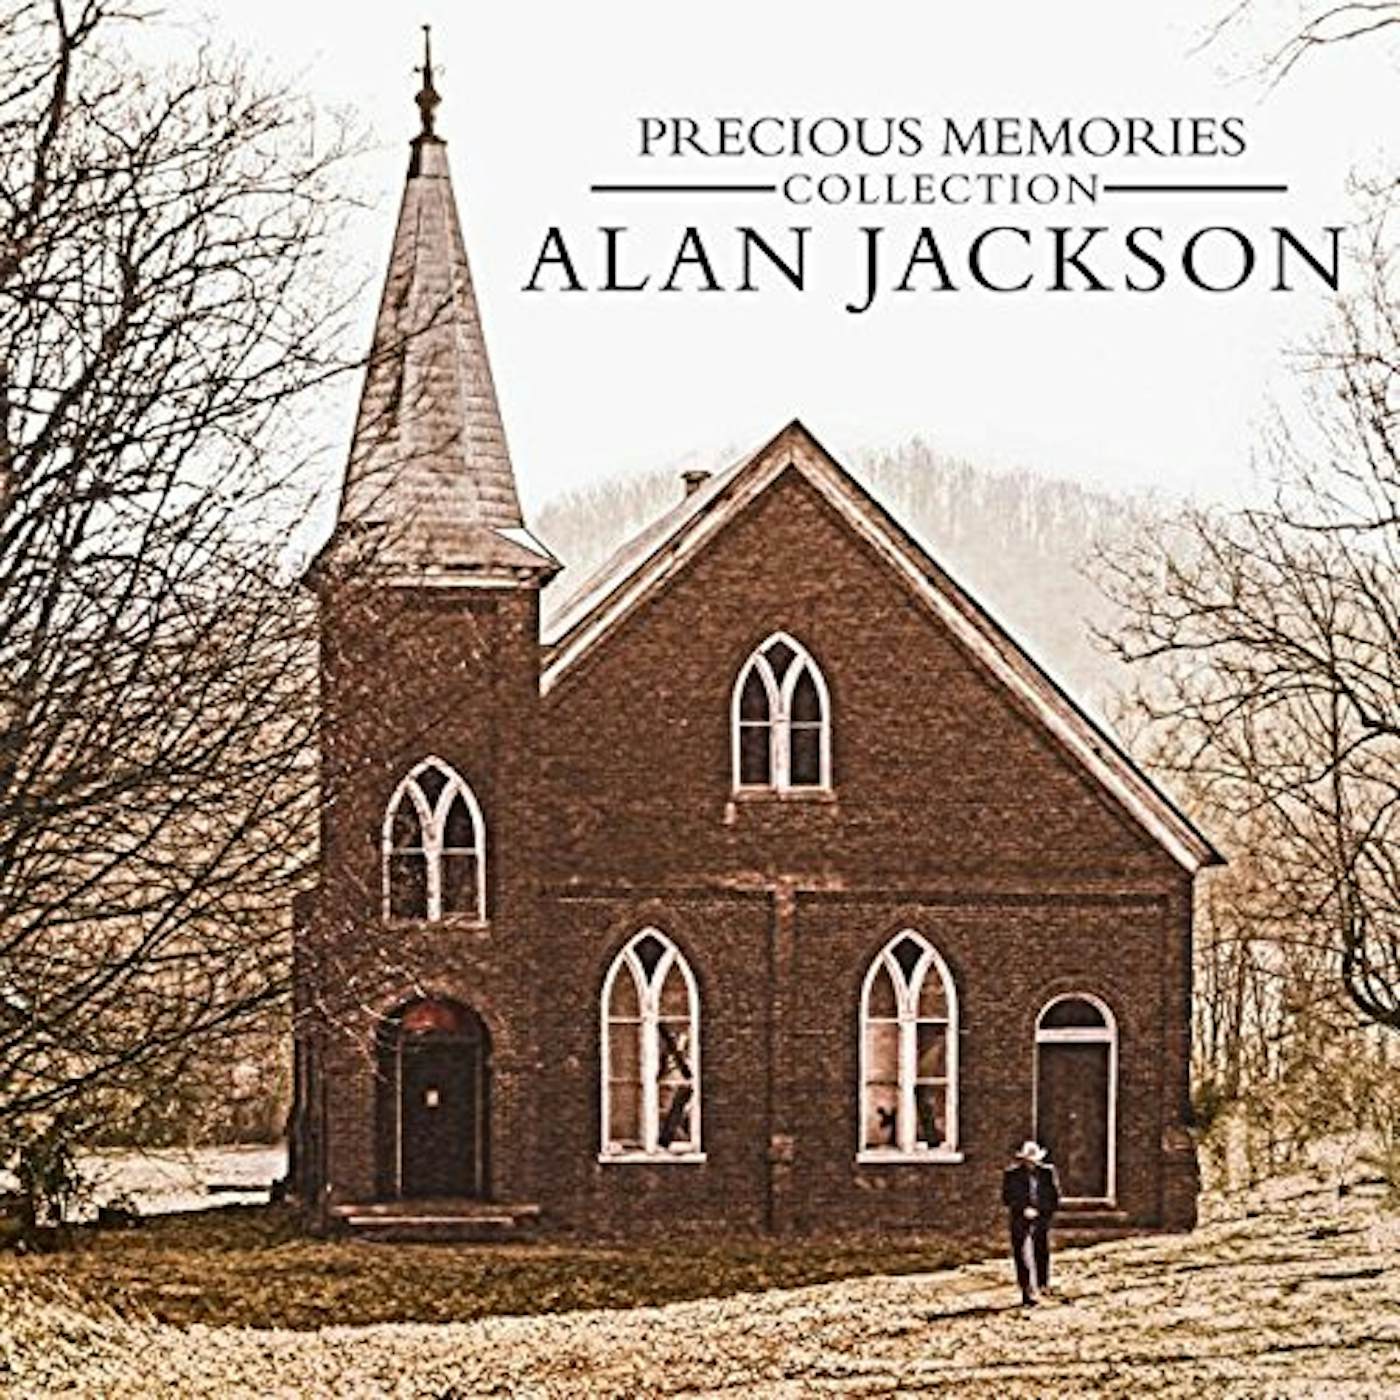 Alan Jackson Precious Memories Collection Vinyl Record